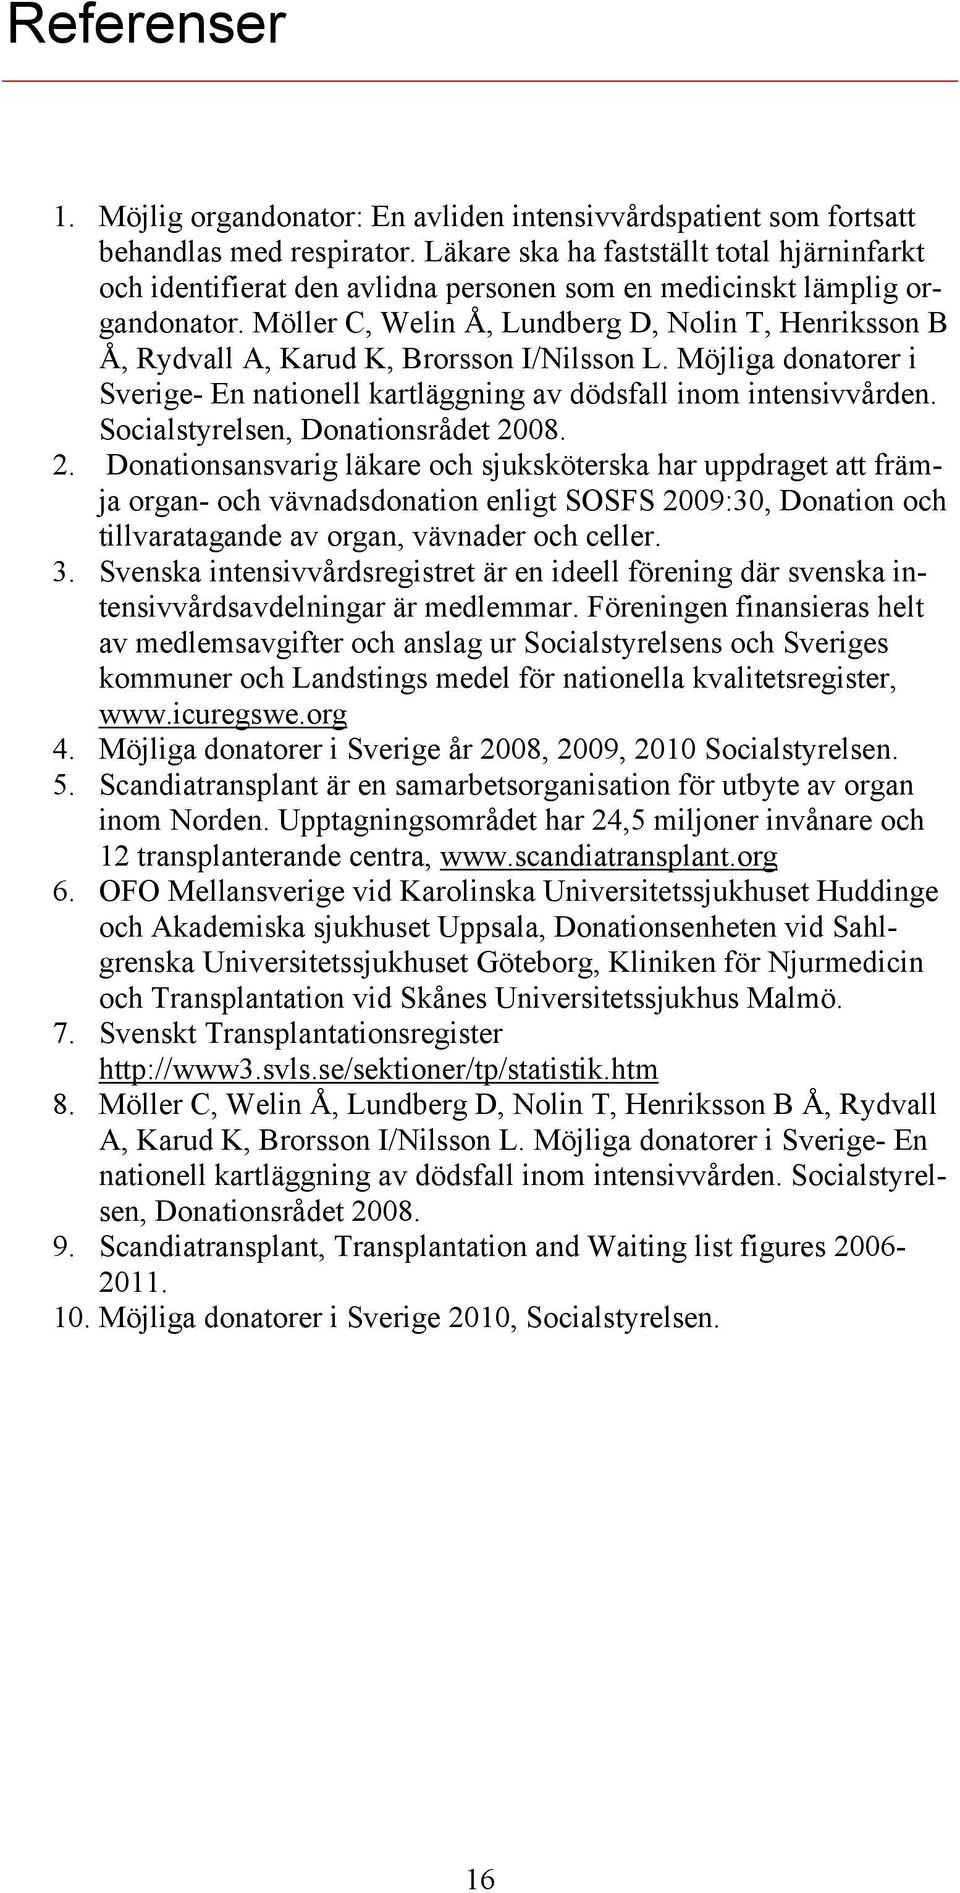 Möller C, Welin Å, Lundberg D, Nolin T, Henriksson B Å, Rydvall A, Karud K, Brorsson I/Nilsson L. Möjliga donatorer i Sverige- En nationell kartläggning av dödsfall inom intensivvården.